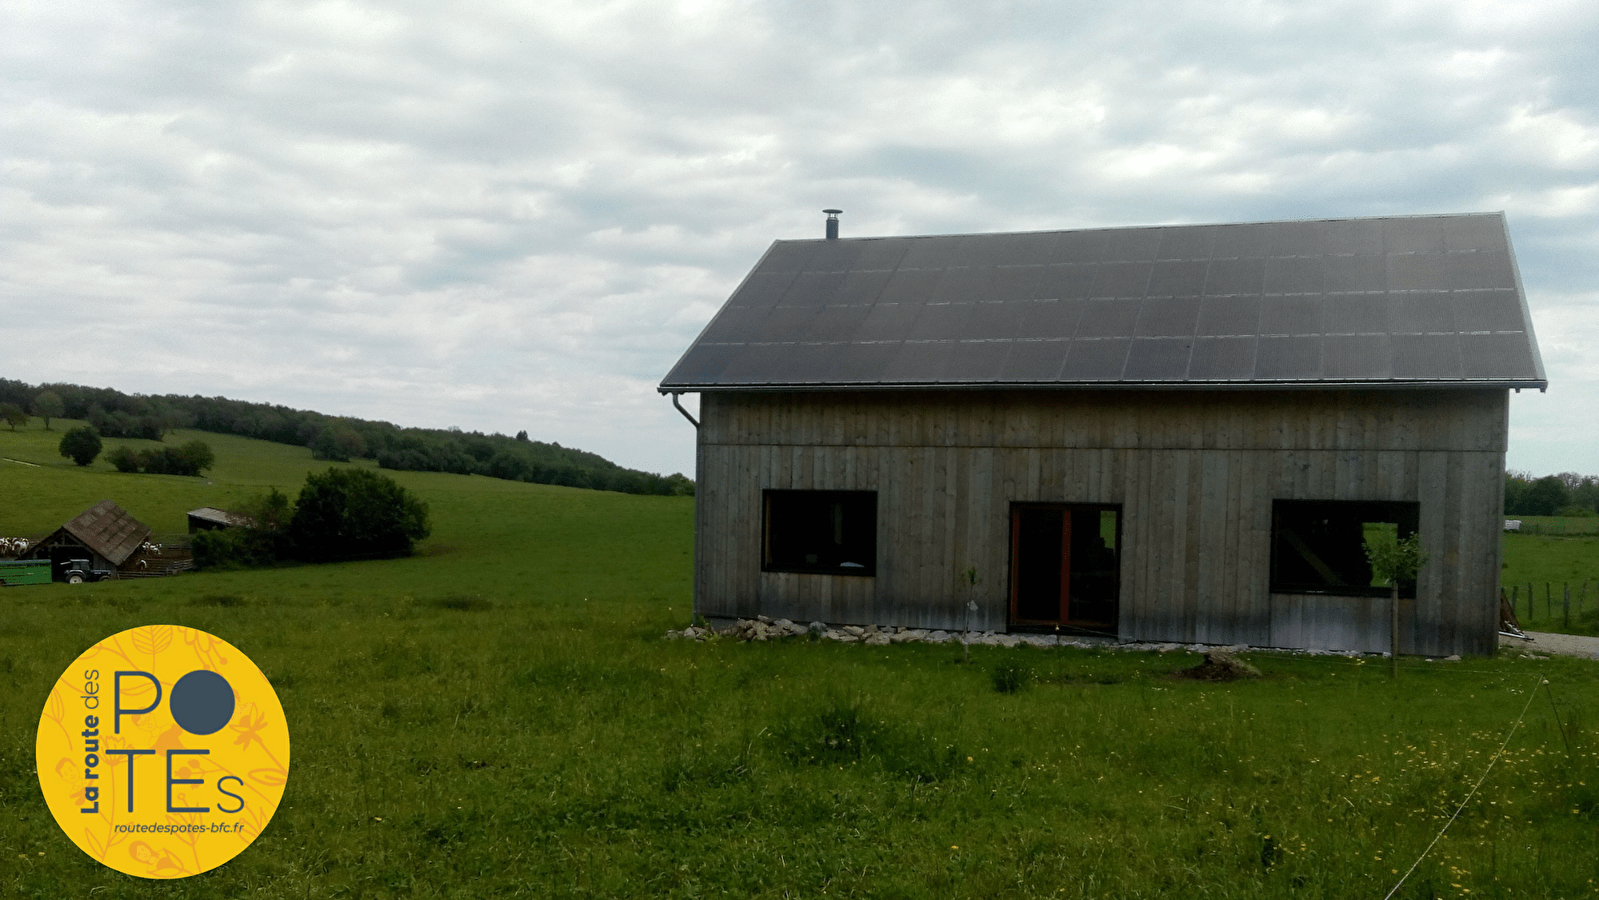 Une centrale photovoltaïque citoyenne sur un bâtiment exemplaire abritant une activité artisanale